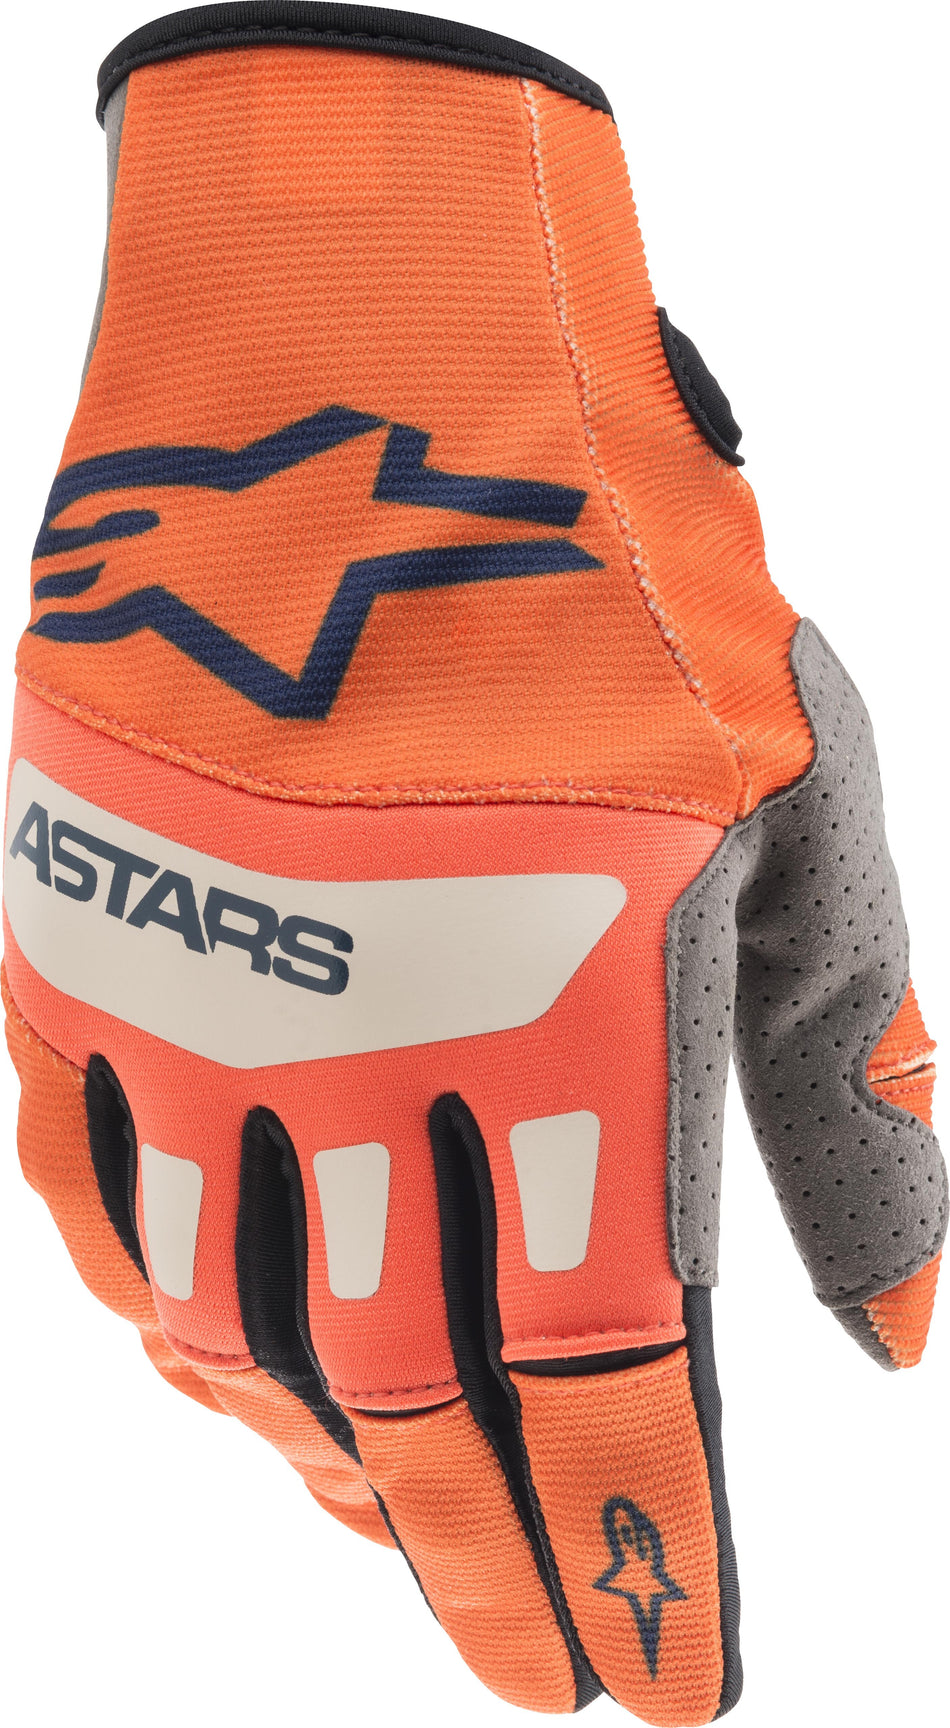 ALPINESTARS Techstar Gloves Orange/Dark Blue/Off White Md 3561021-472-M